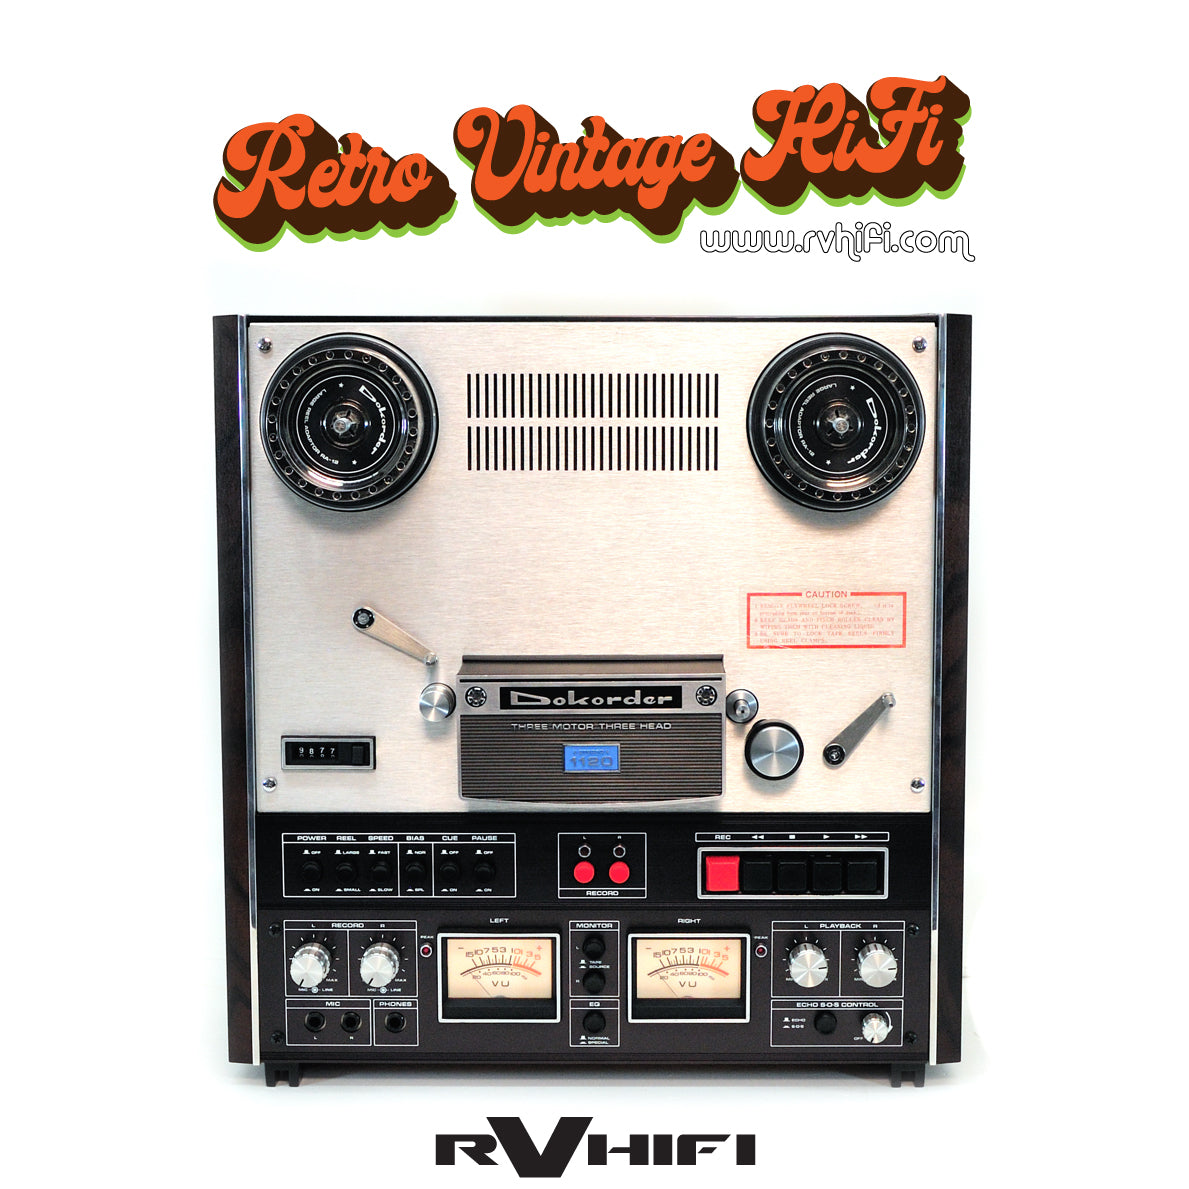 Buy Dokorder 1120 4-Track Stereo/Mono Tape Deck Online in Australia – RV  HIFI